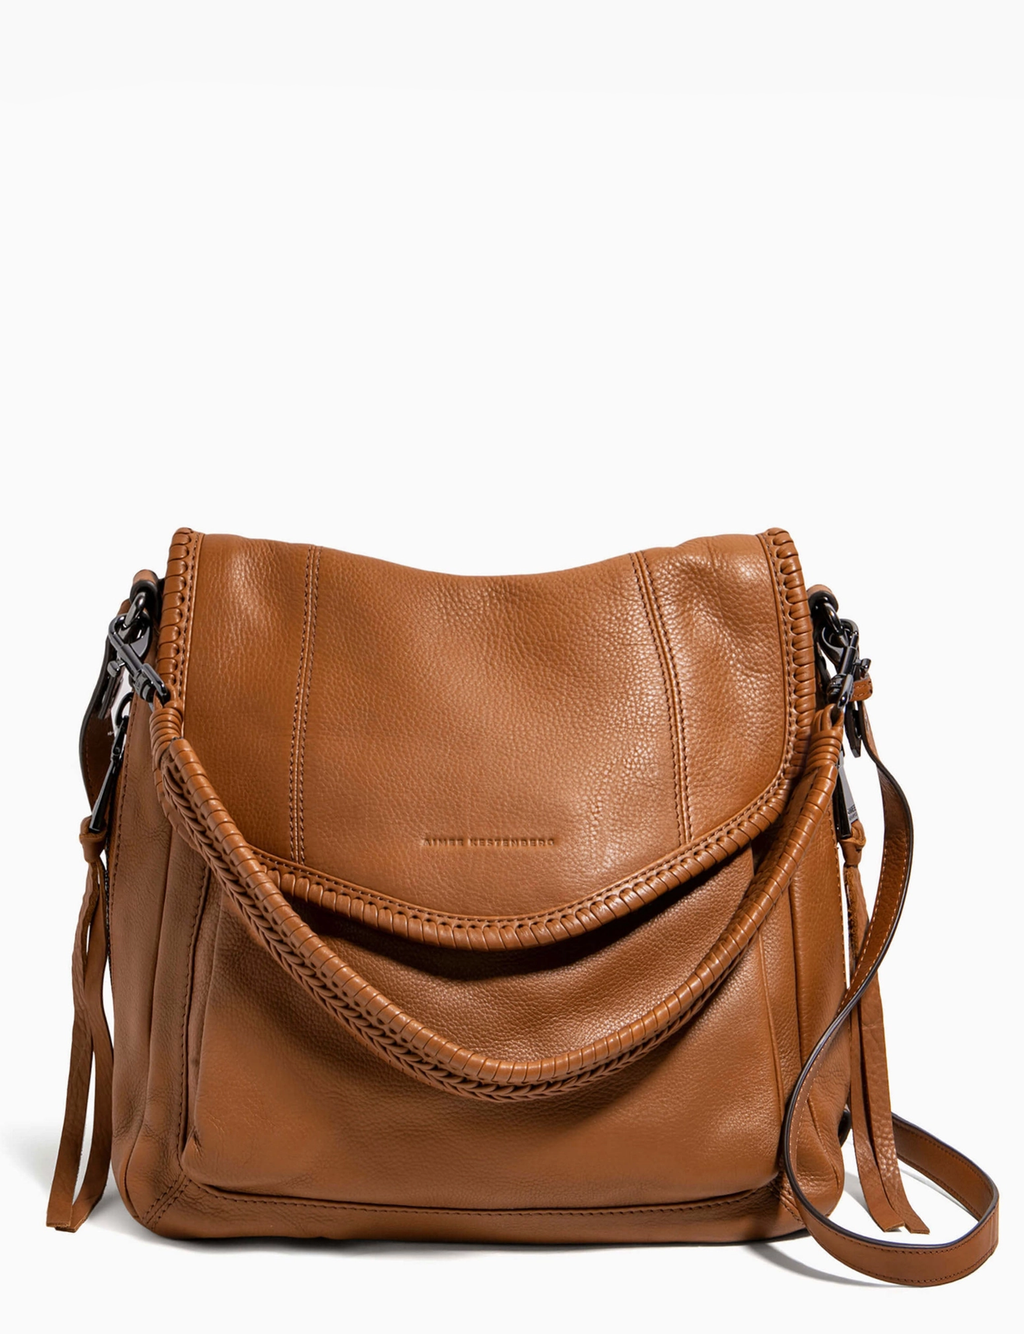 All For Love Convertible Shopper Shoulder Bag, Chestnut